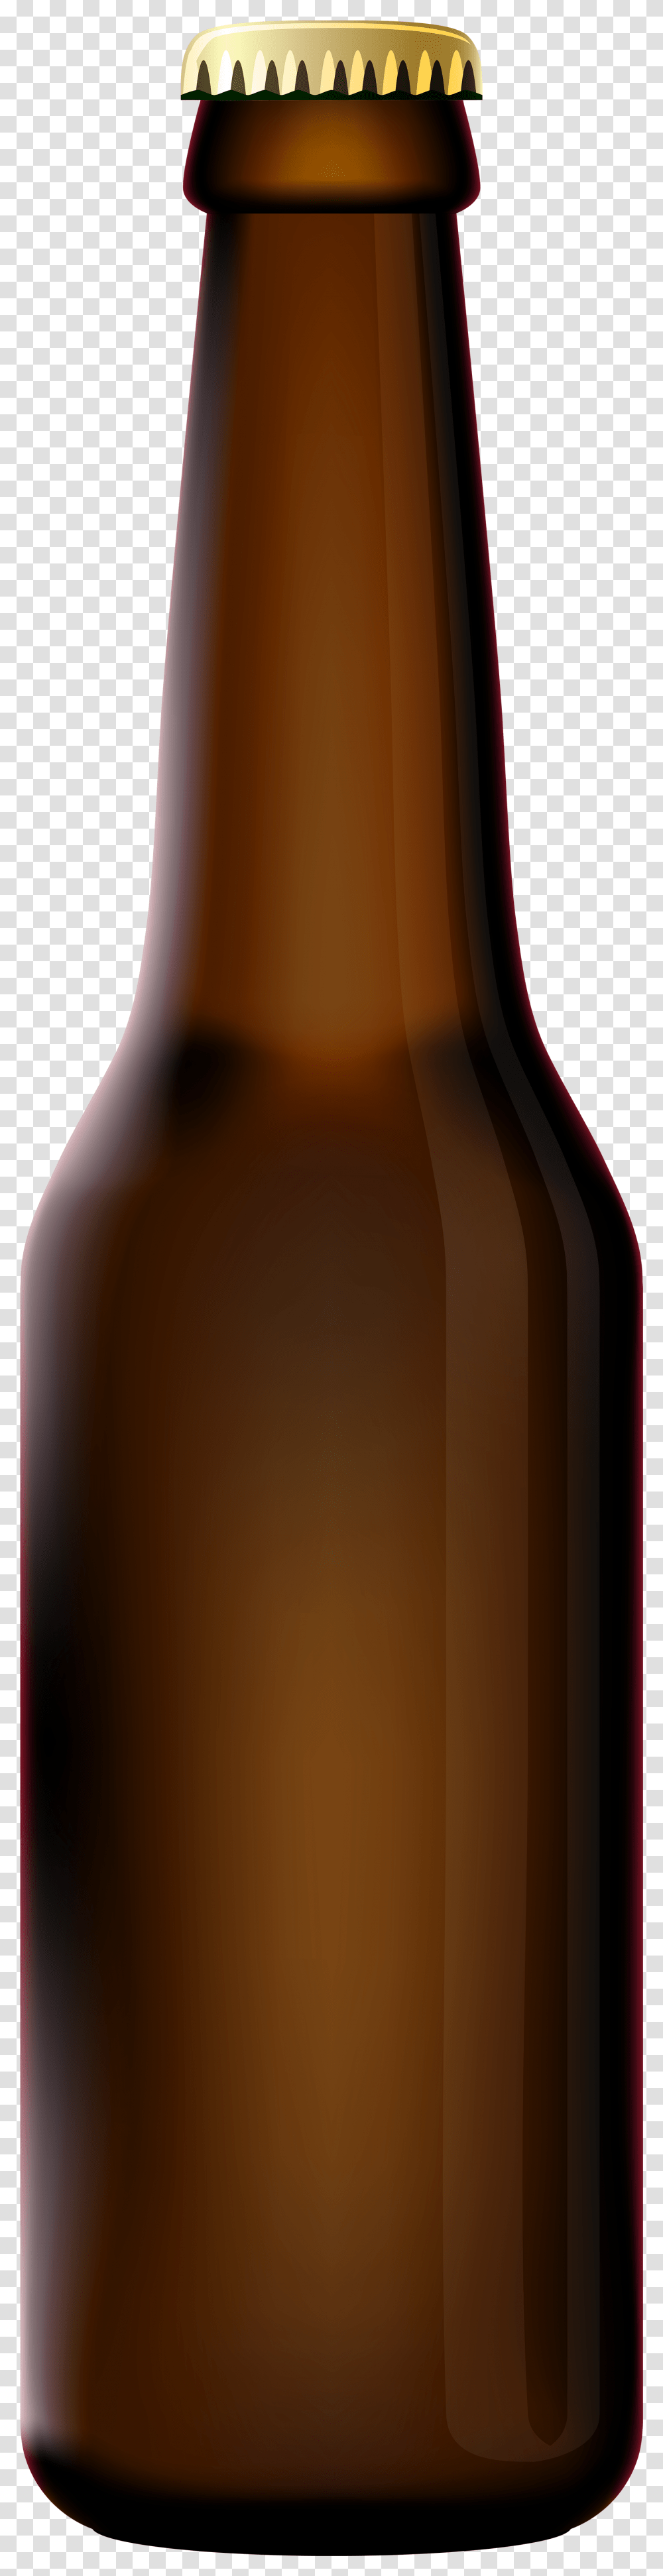 Beer Bottle Beer Bottle, Alcohol, Beverage, Drink Transparent Png